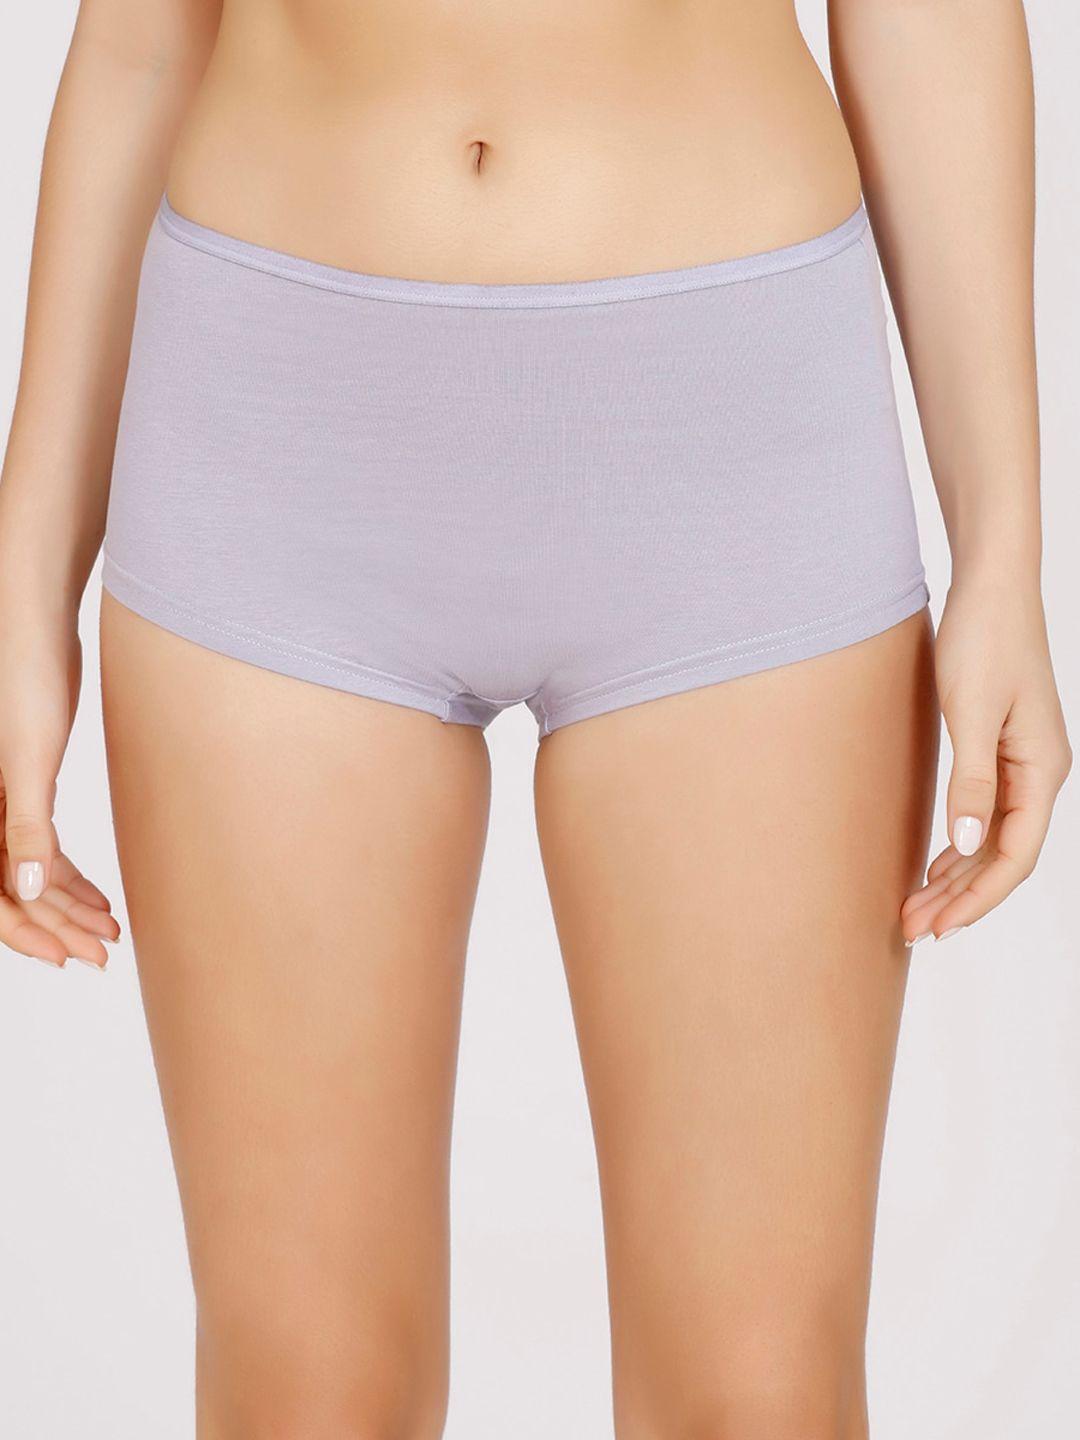 nykd-women-lavender-solid-cotton-boy-shorts-briefs